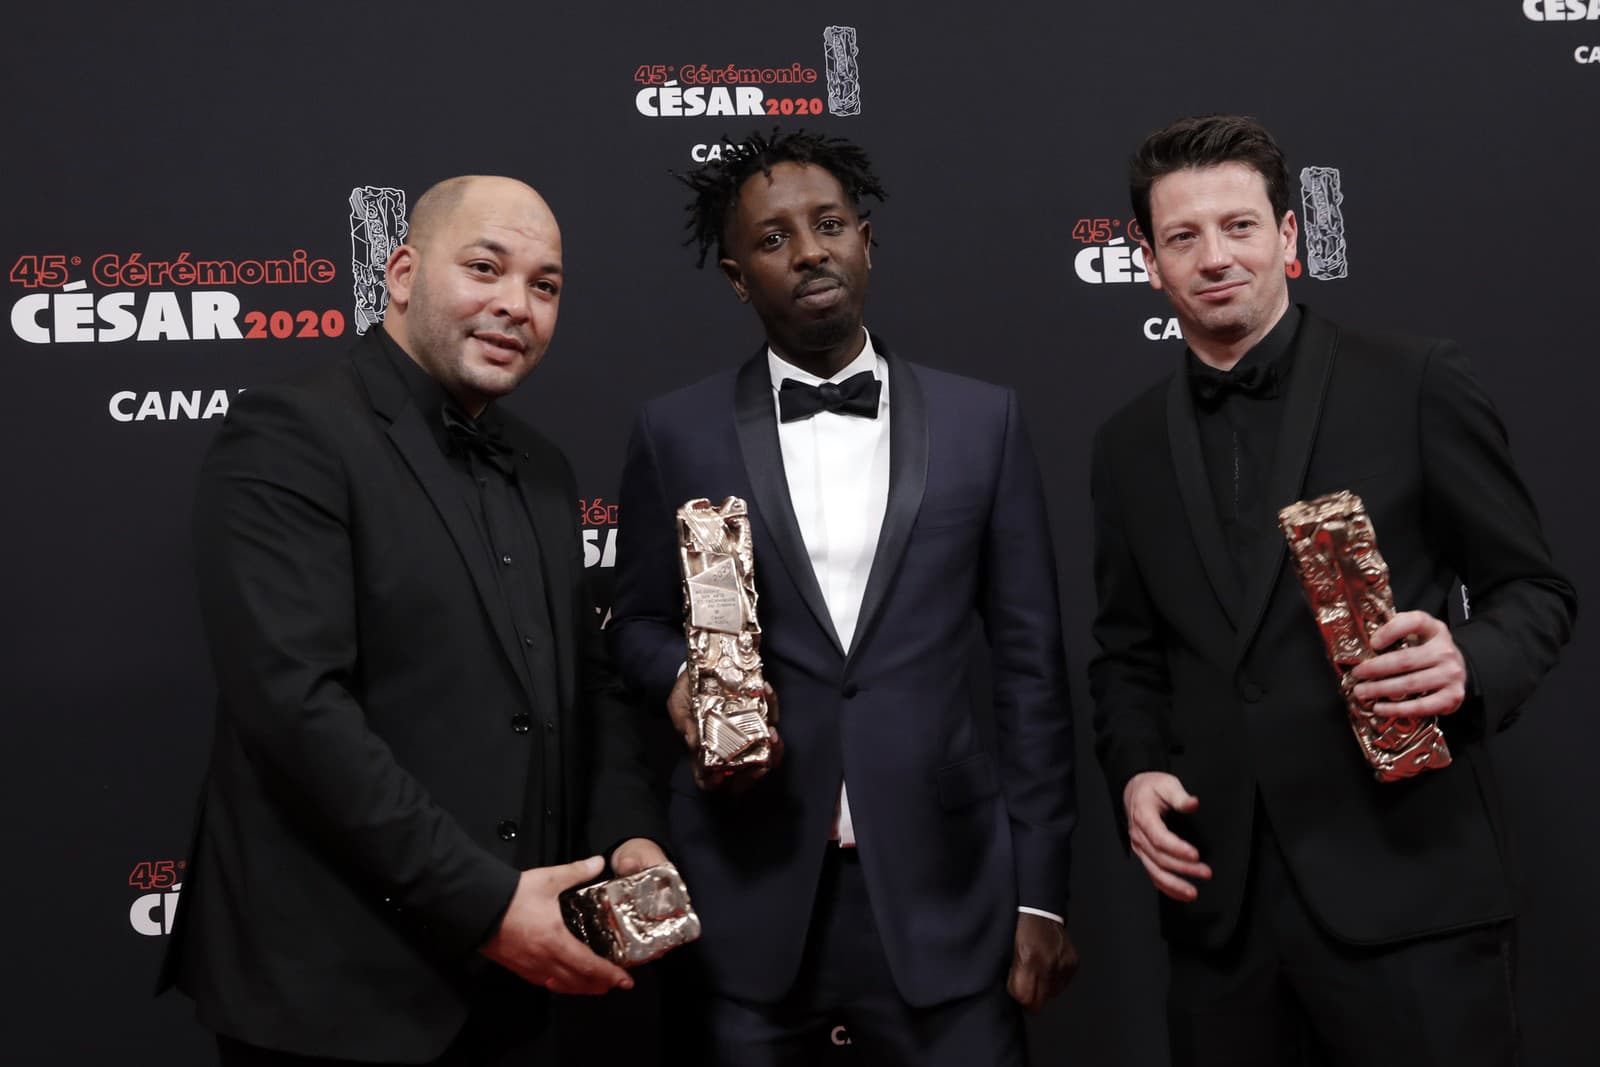 Režisér Ladj Ly (uprostred) pózuje so soškou Césara za najlepší film Bedári (Les Misérables), vľavo Toufik Ayadi a vpravo Christophe Barral